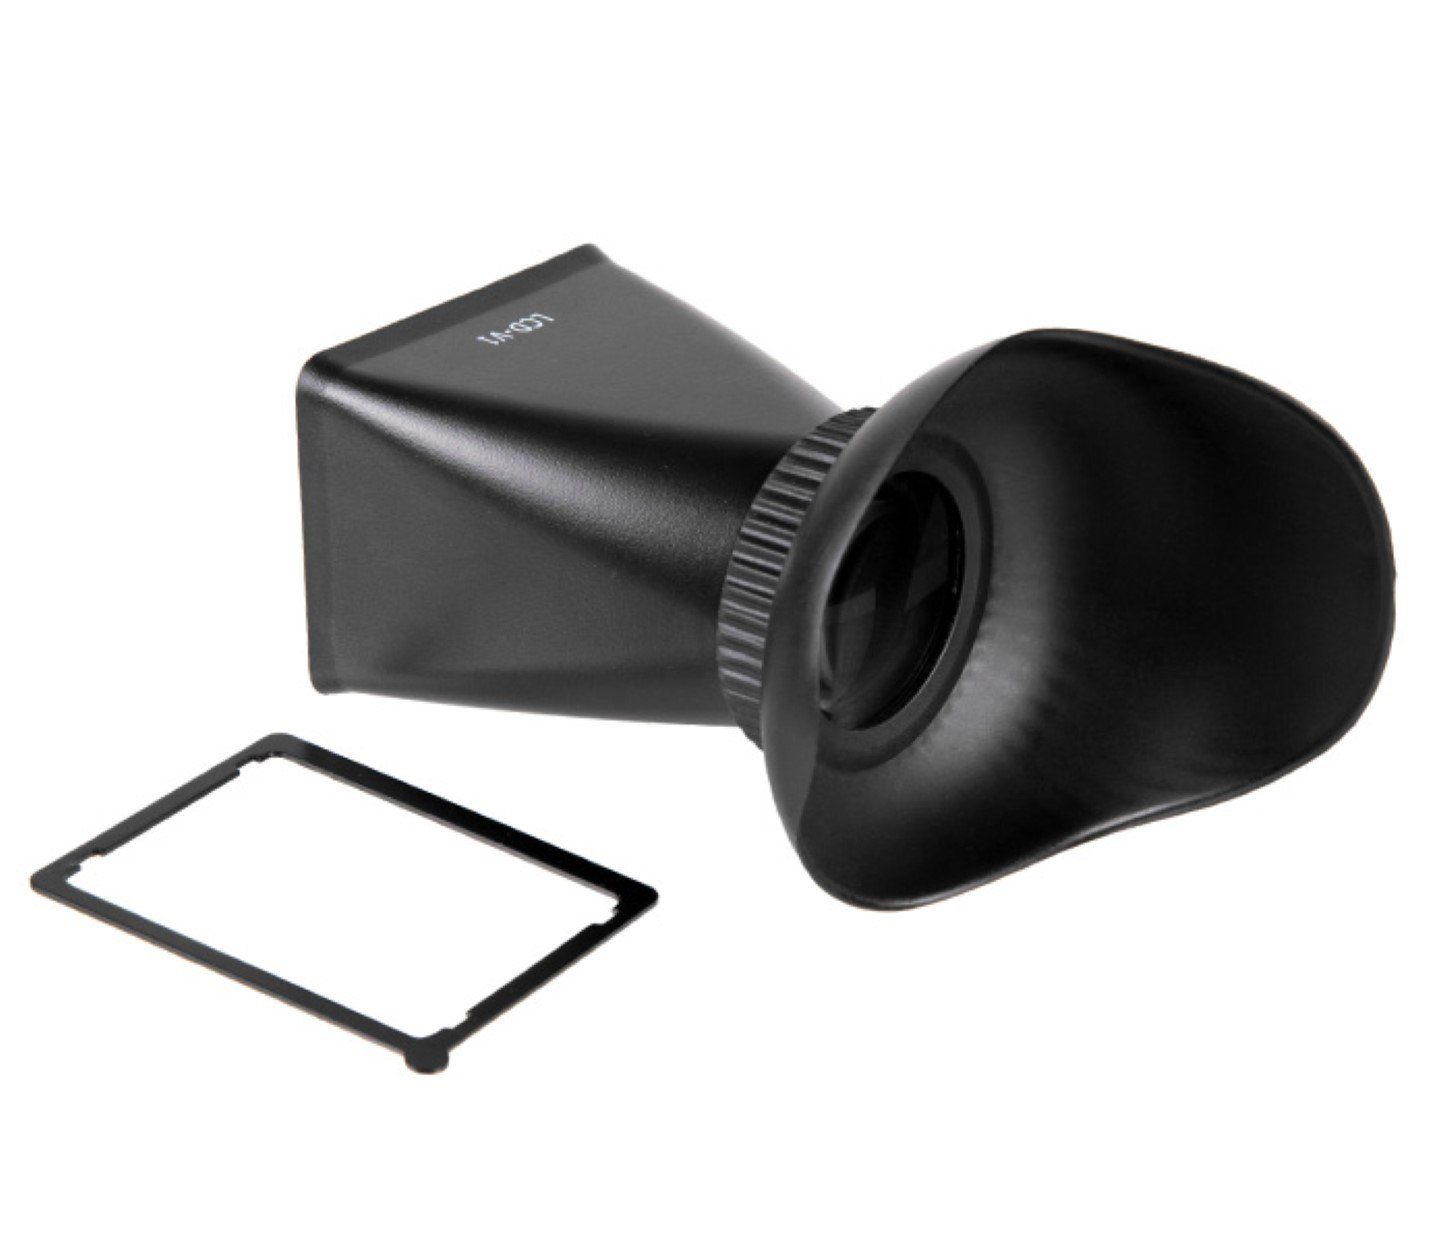 600D Kamerazubehör-Set LCD Displaylupe ayex Viewfinder und V3 60D für Canon EOS